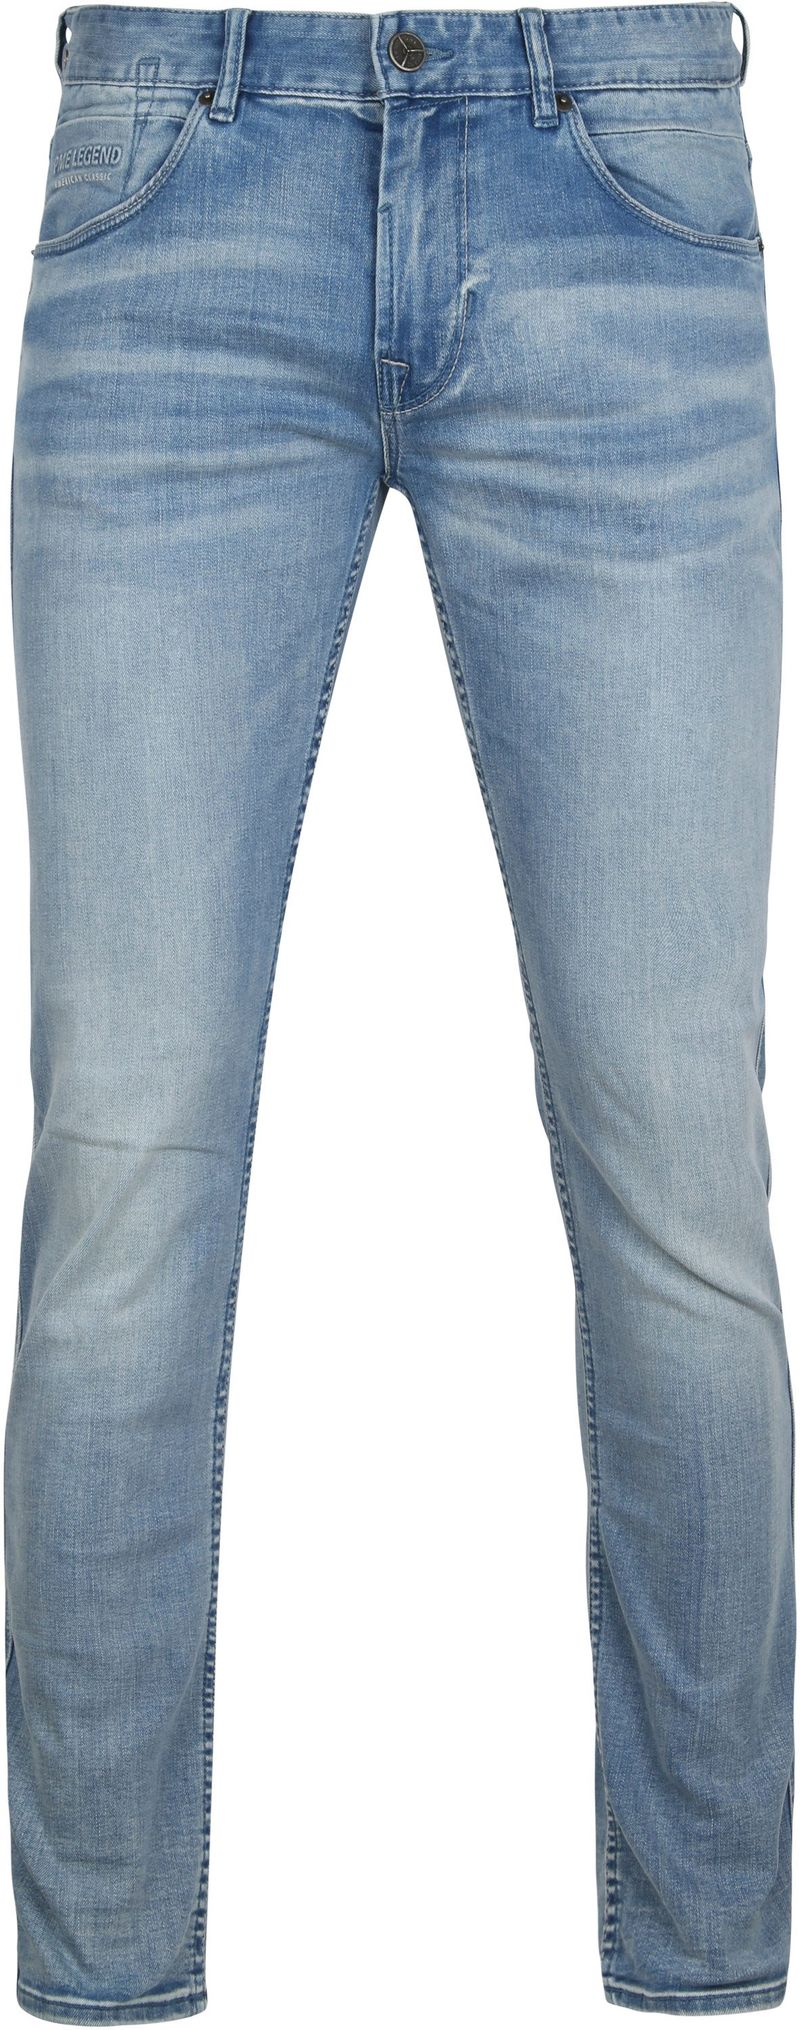 PME Legend Nightflight Jeans Blau - Größe W 33 - L 34 günstig online kaufen